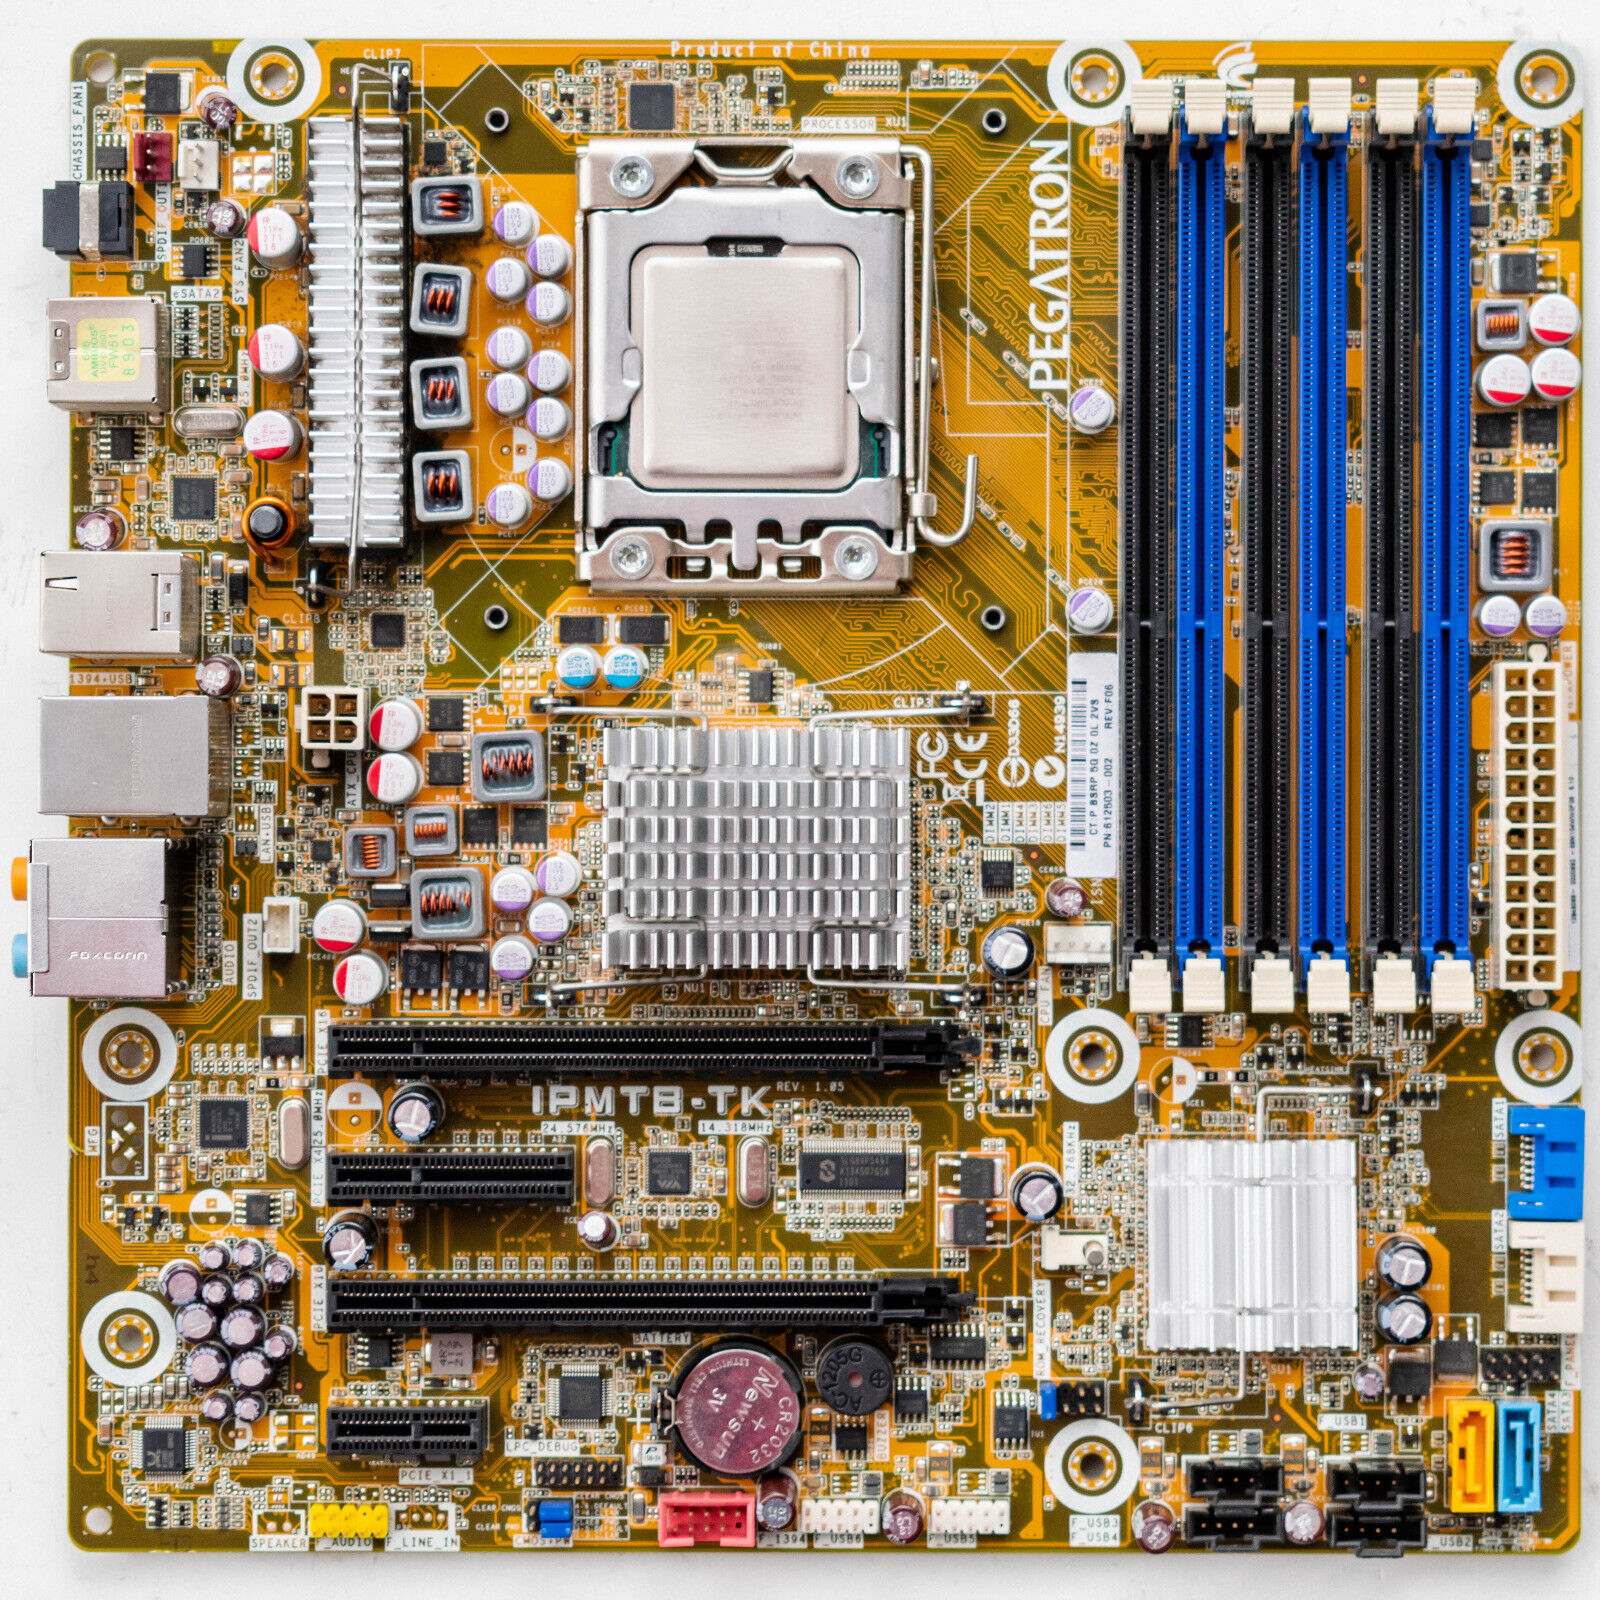 HP Elite h8-1080t 612503-002 LGA1366 Motherboard MicroATX DDR3 Intel X58 i7-920